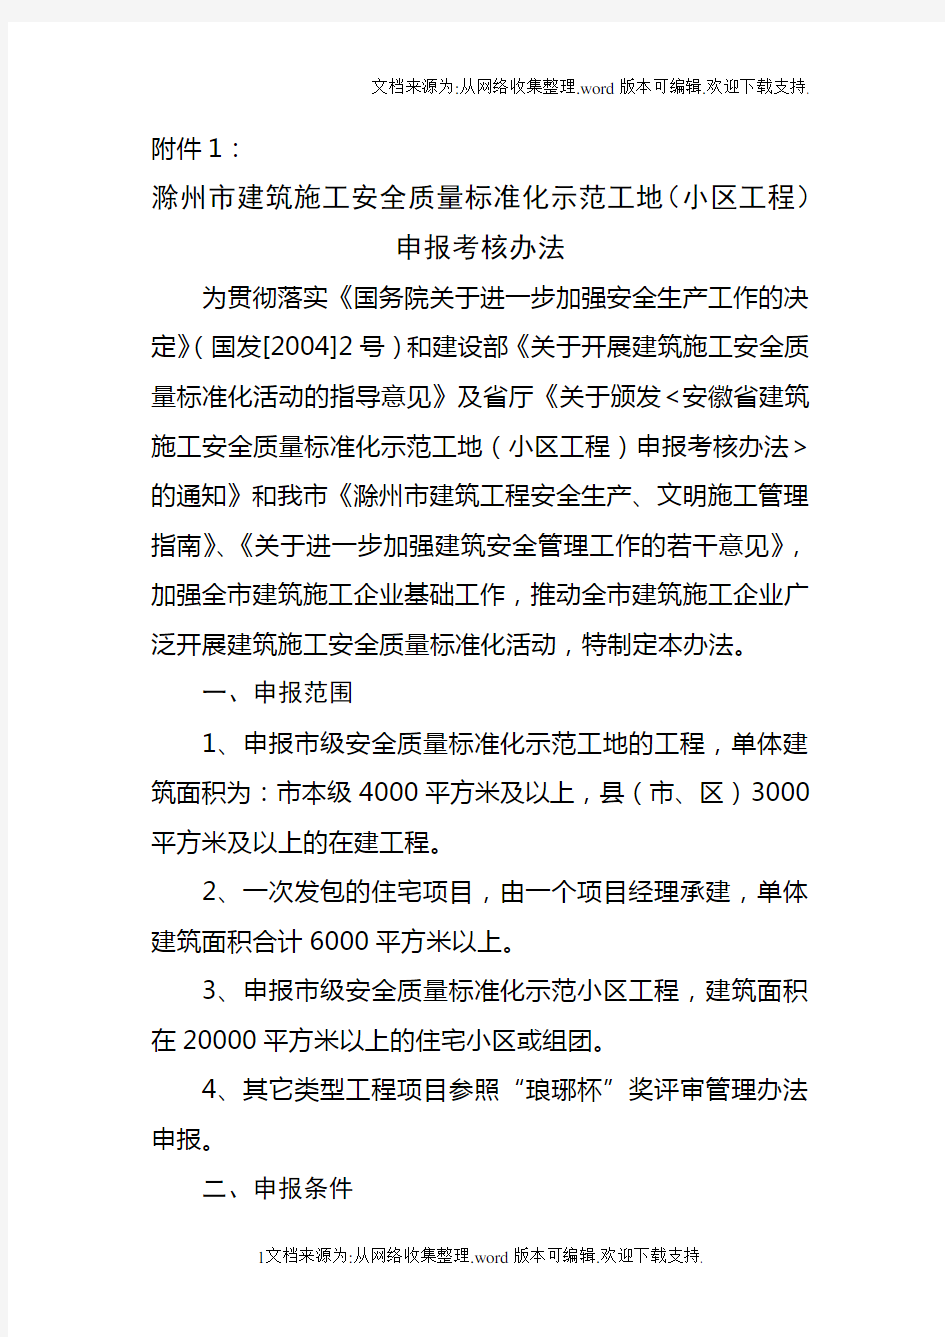 滁州市建筑施工安全质量标准化示范工地(小区工程)申报1.doc